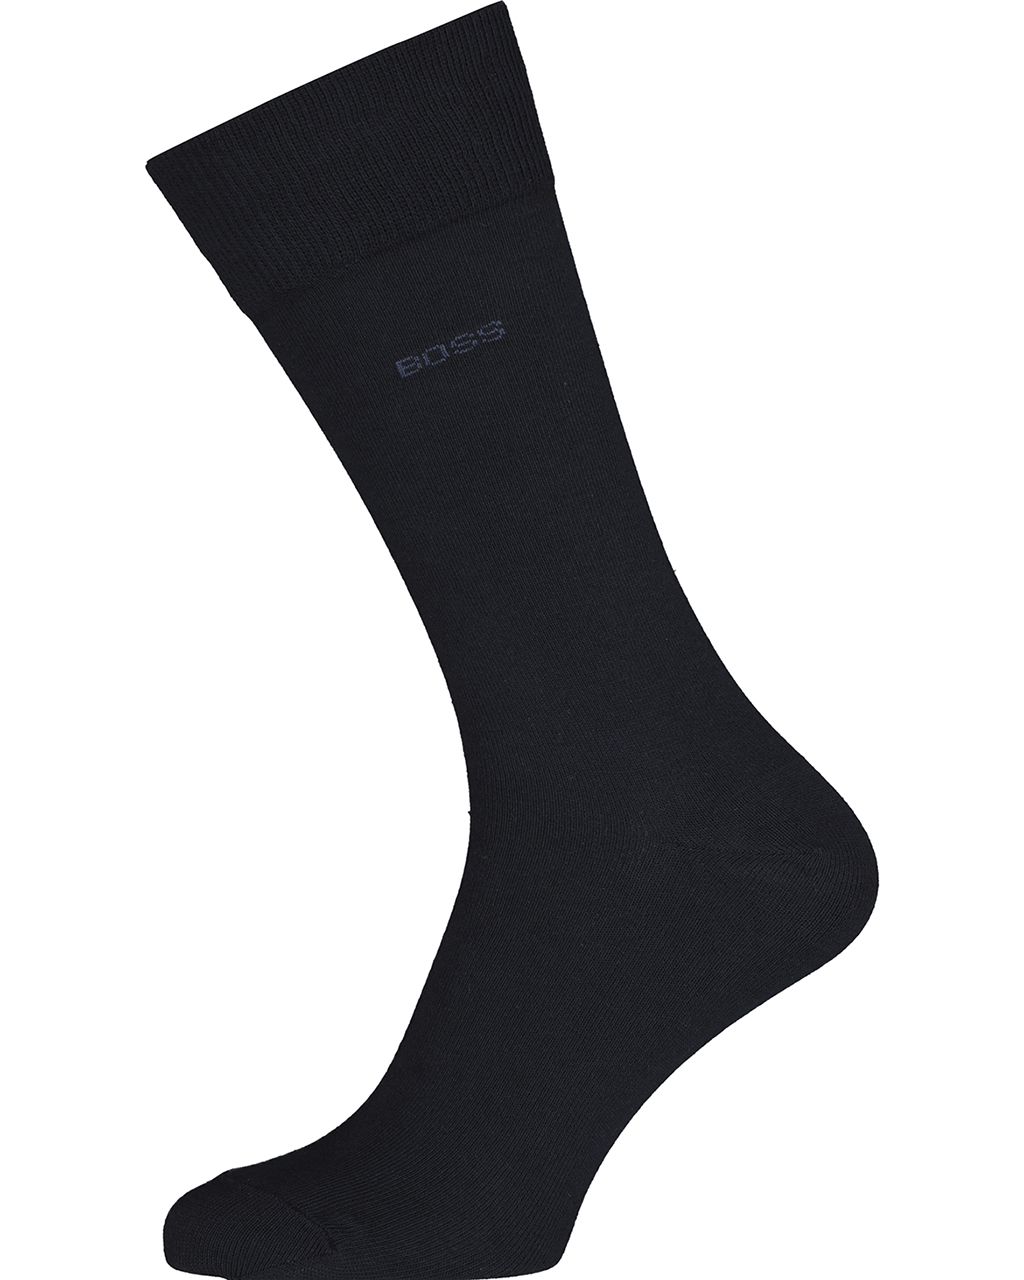 Hugo Boss Menswear Sokken Grijs 082262-002-3942